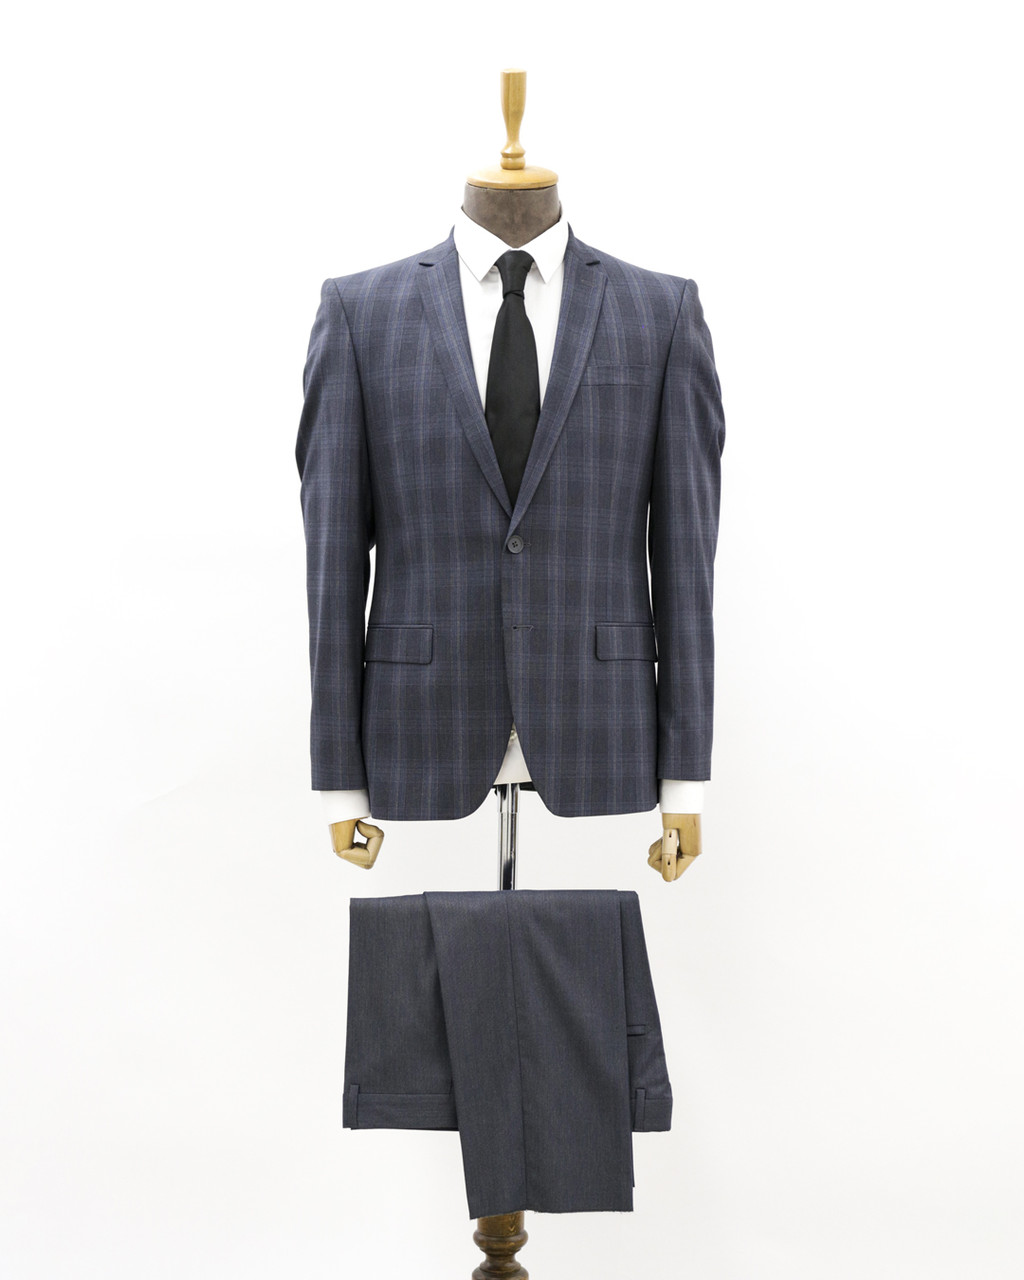 Мужской деловой костюм «UM&H 16517727» серый, фото 1